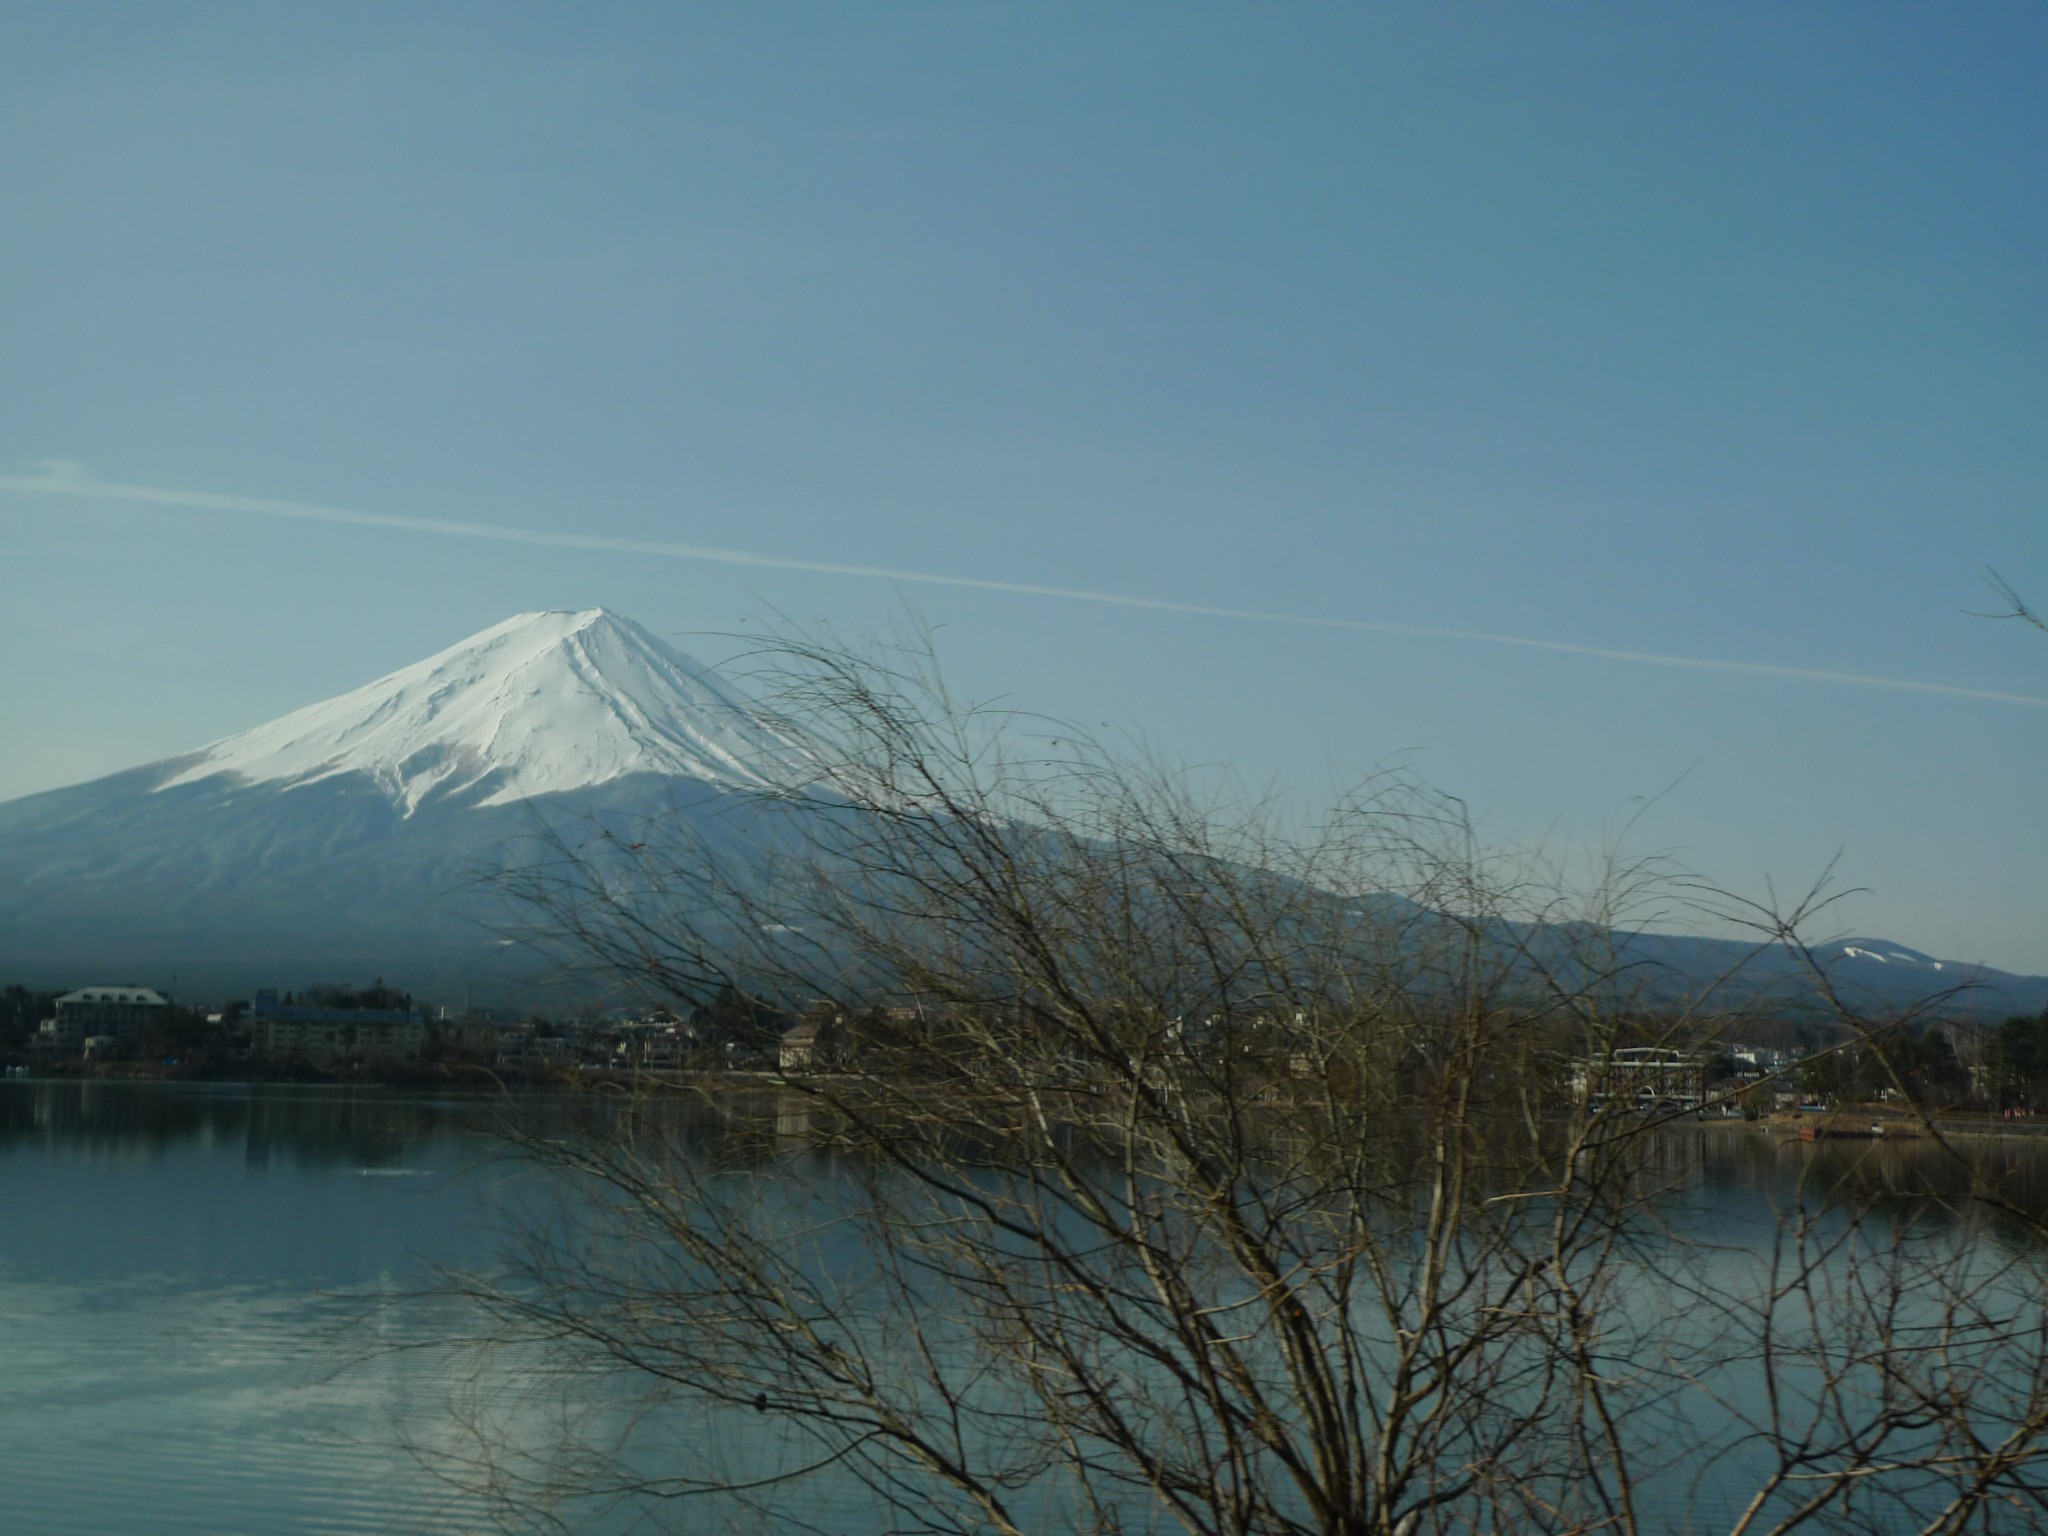 富士山下歌词